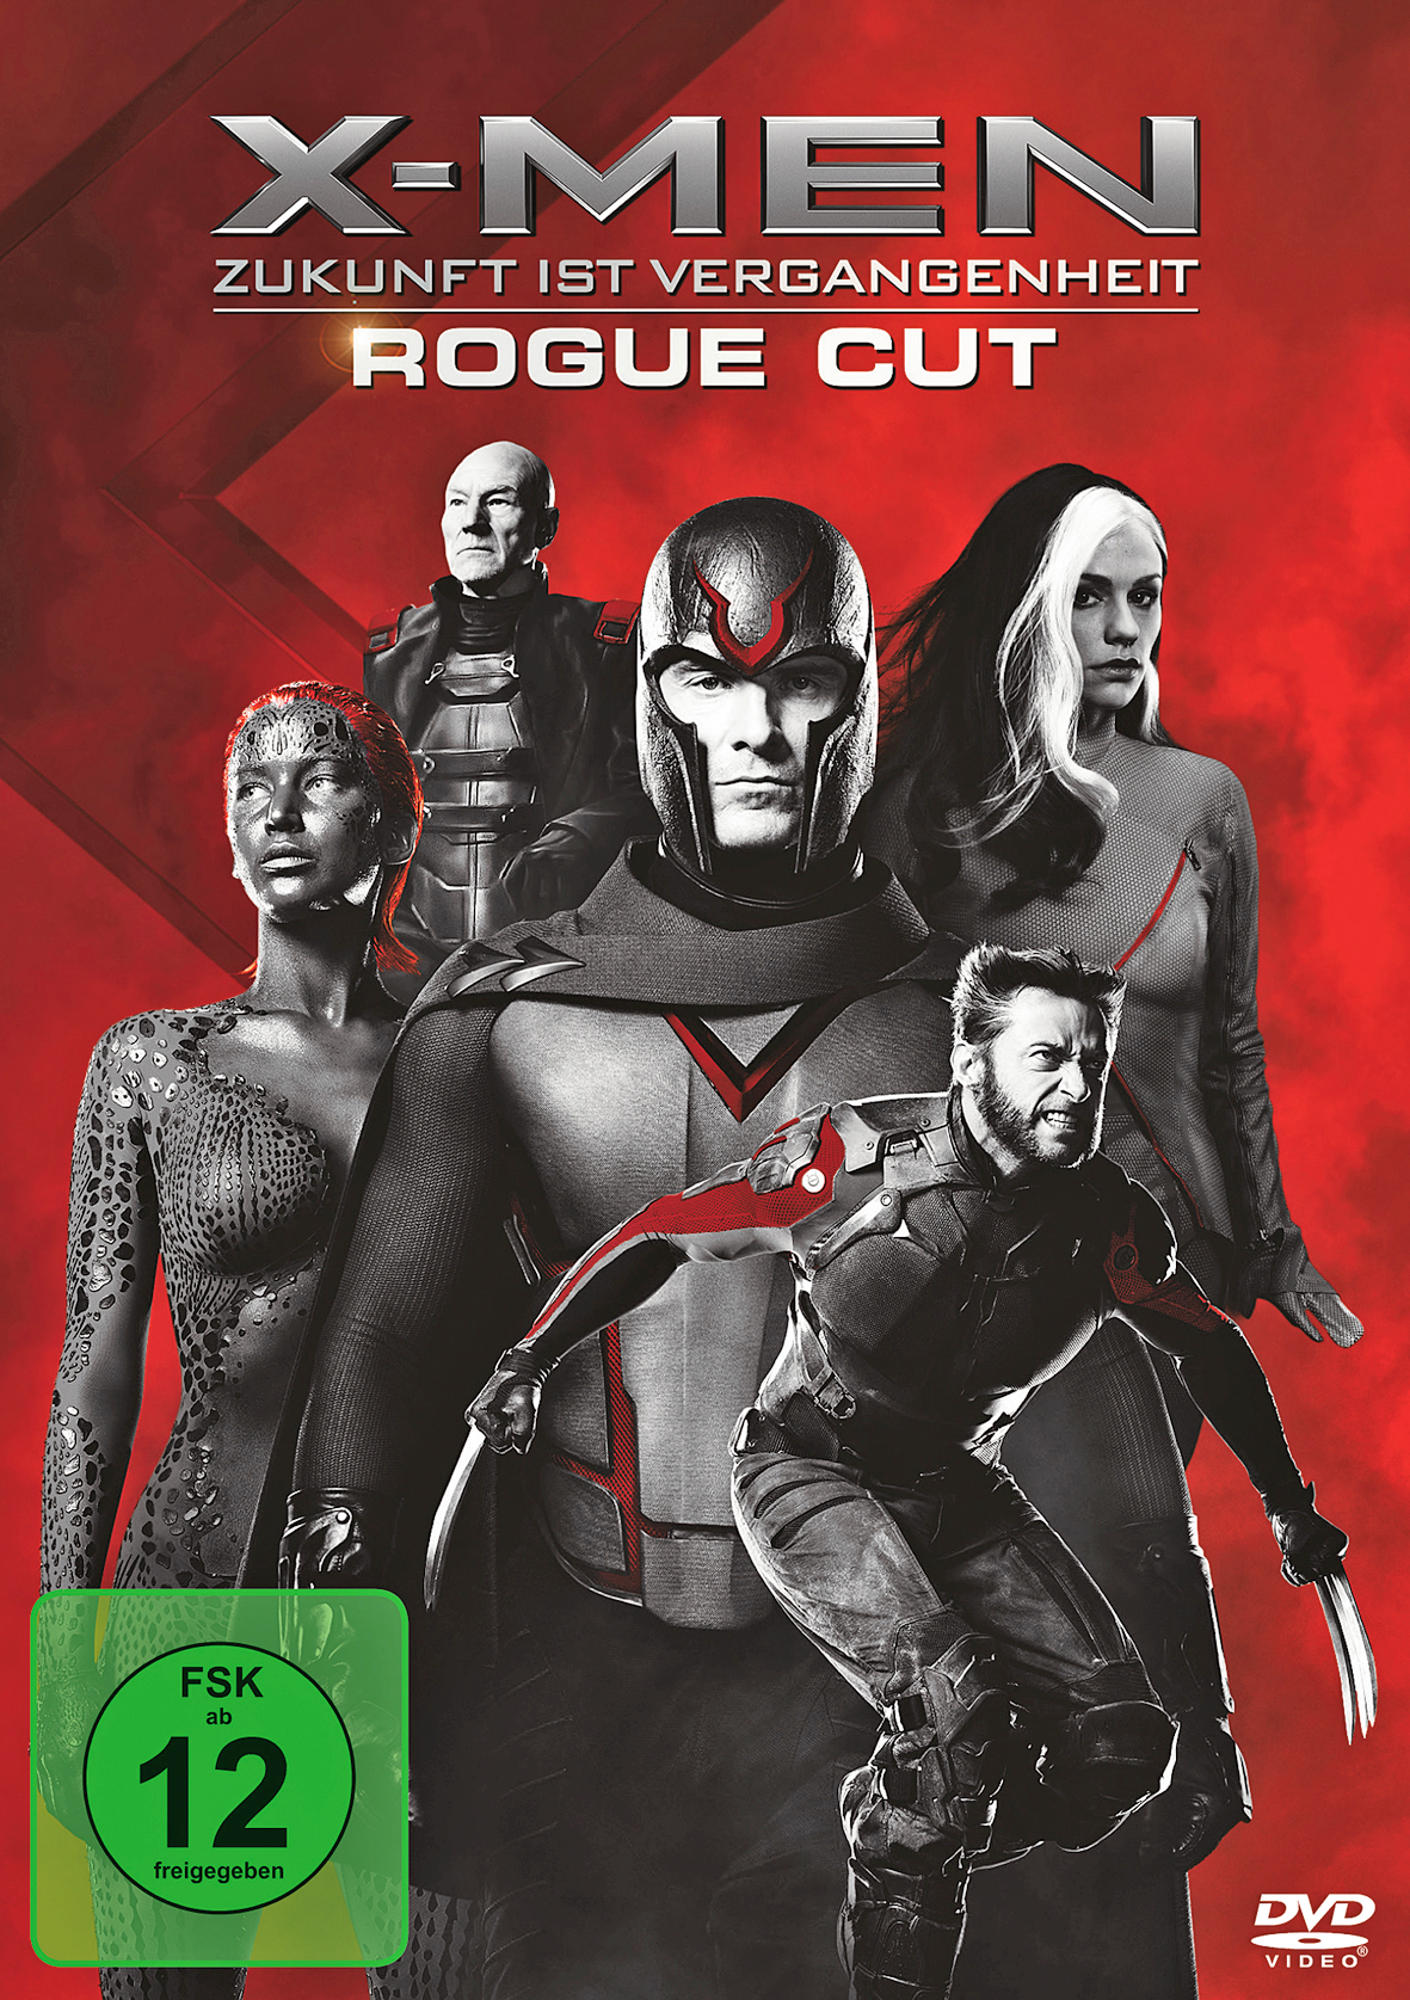 X-Men: Zukunft ist Rogue DVD Cut - Vergangenheit